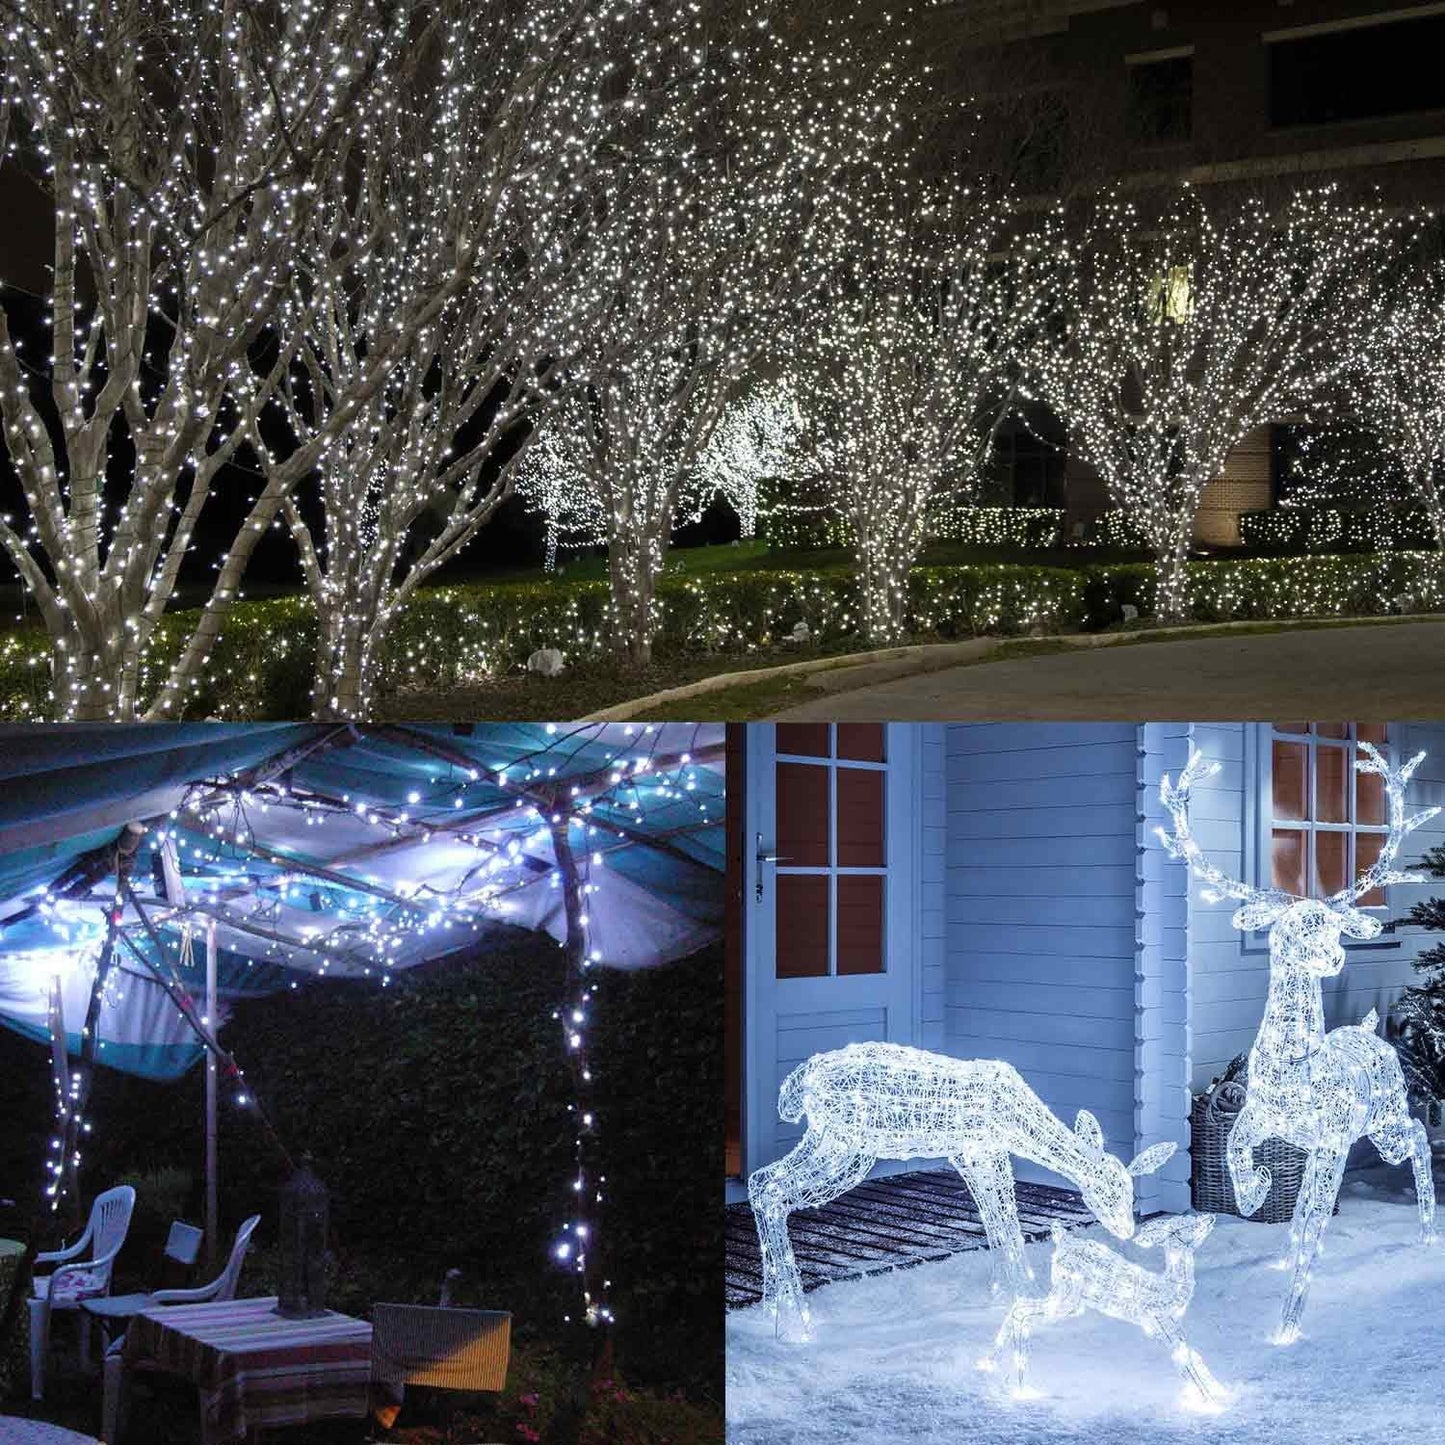 GESCO Catena luminosa interno / esterno 18,75 m, luci led con 8 funzioni, 450 led colore bianco, luci led decorative Natale, illuminazione casa, ghirlanda luce